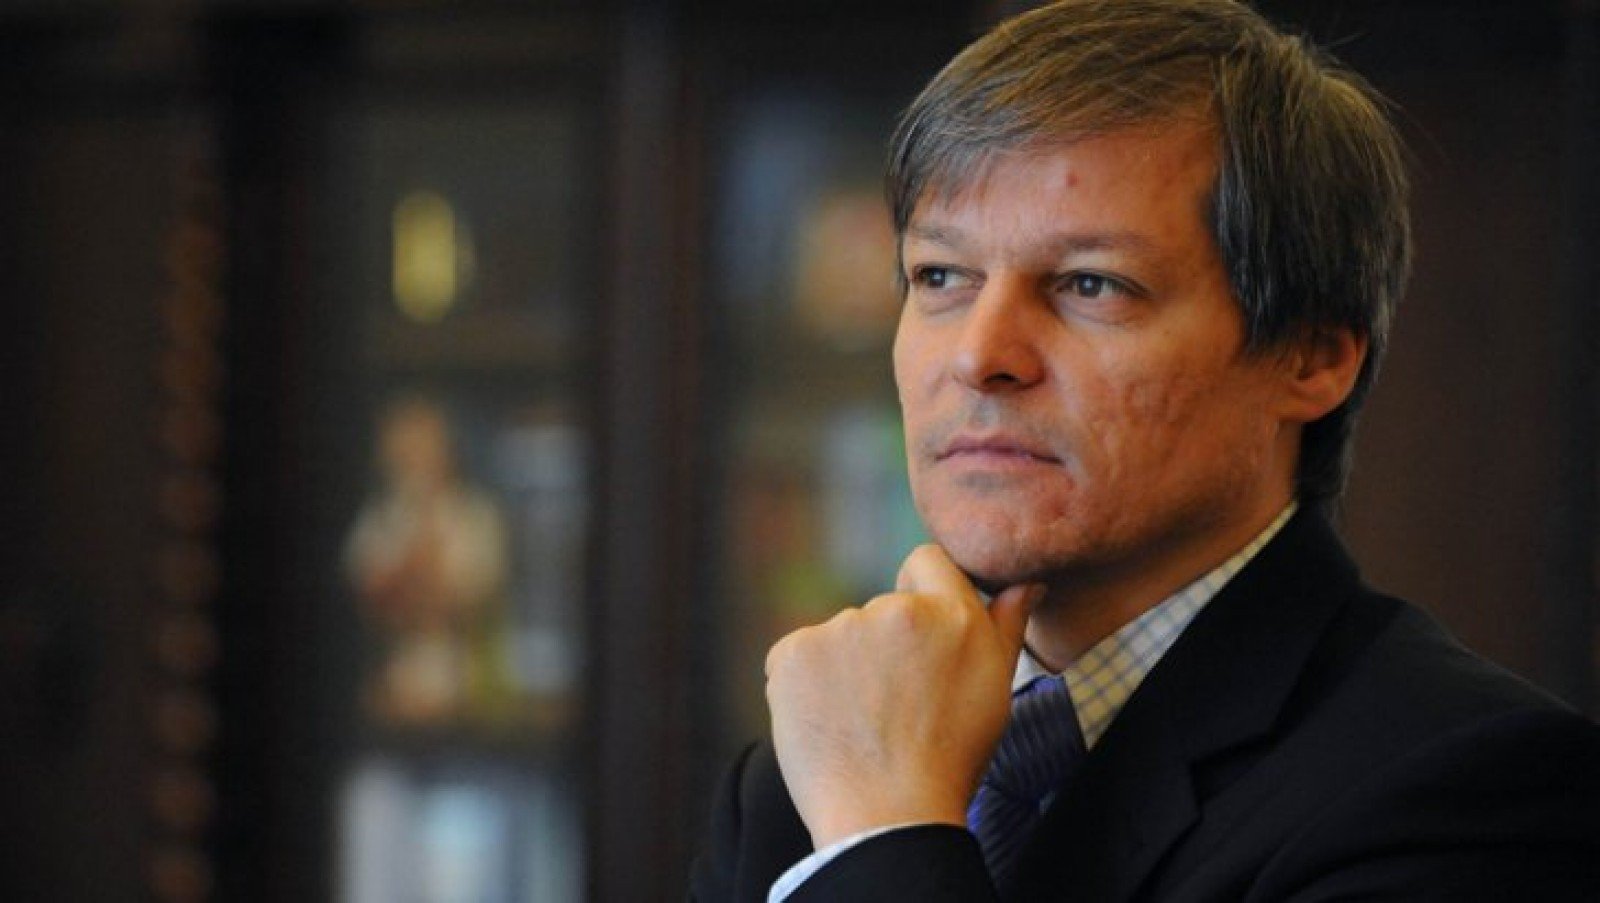 Lider UDMR: Dacian Cioloș este ignorat pe tema modificărilor Constituției și spune prostii îngrozitoare